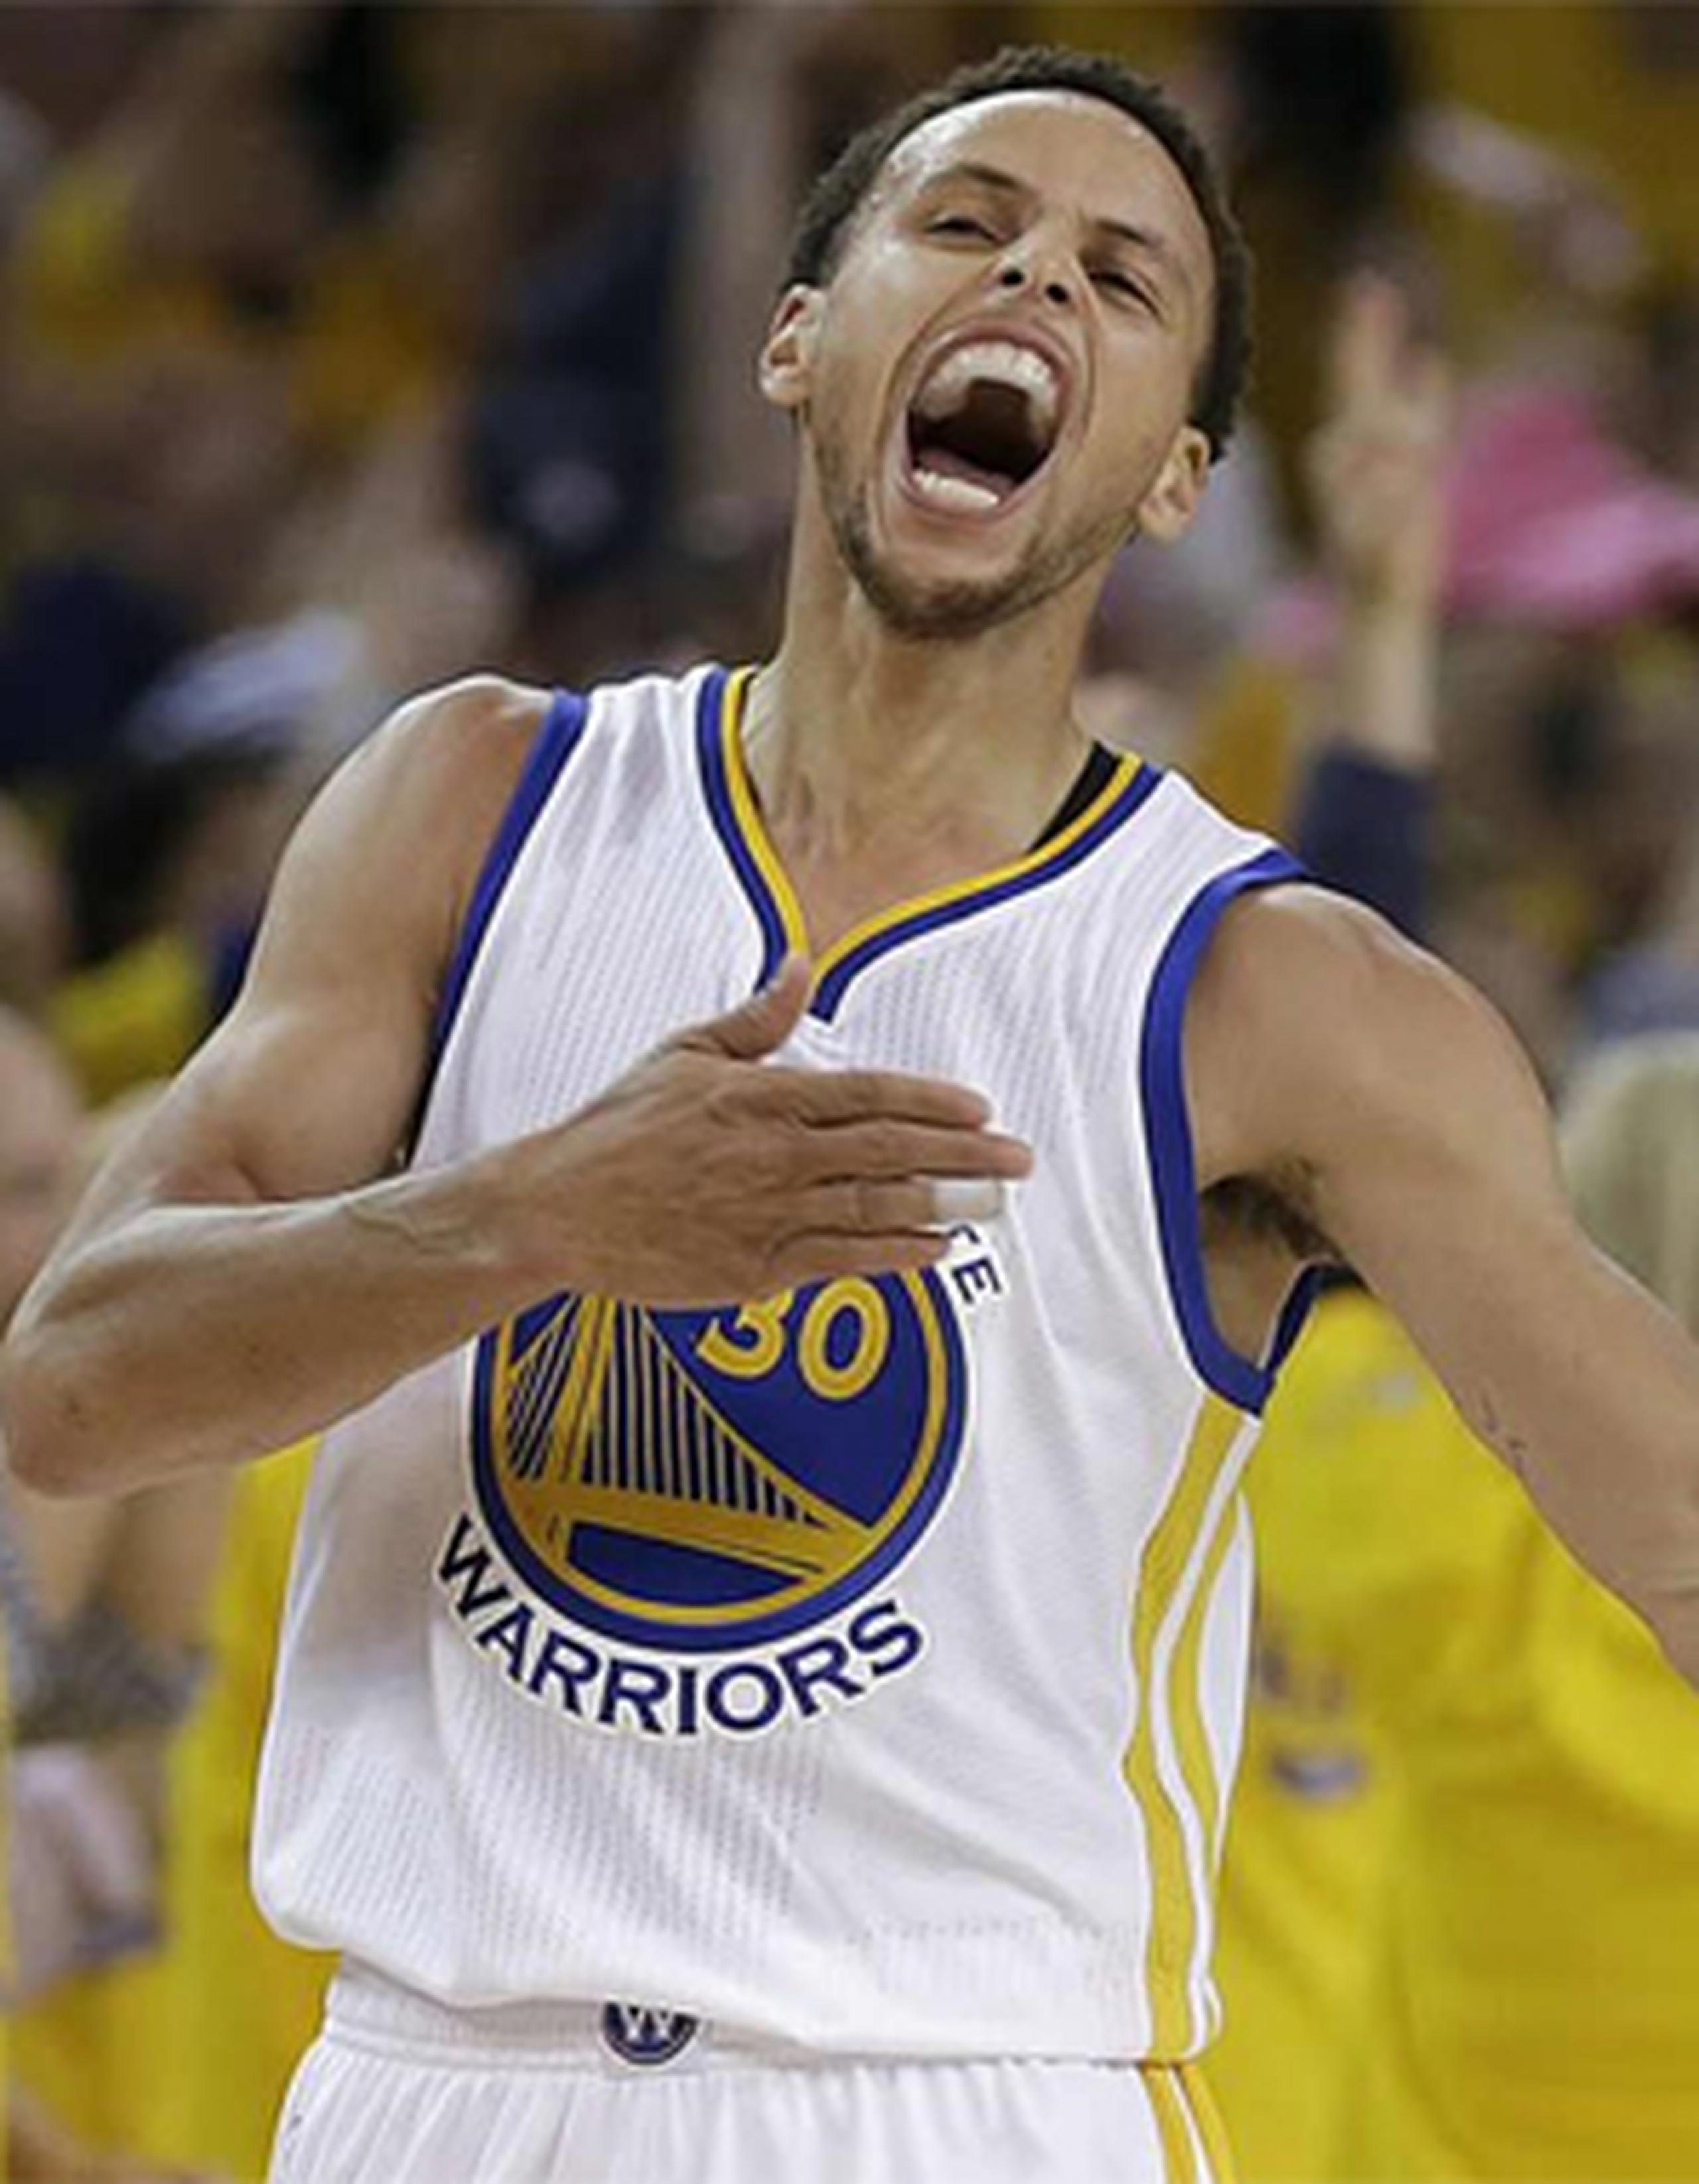 Curry llevó esta camiseta en uno de los partidos de los Warriors contra los Cavaliers de Cleveland. (AP)